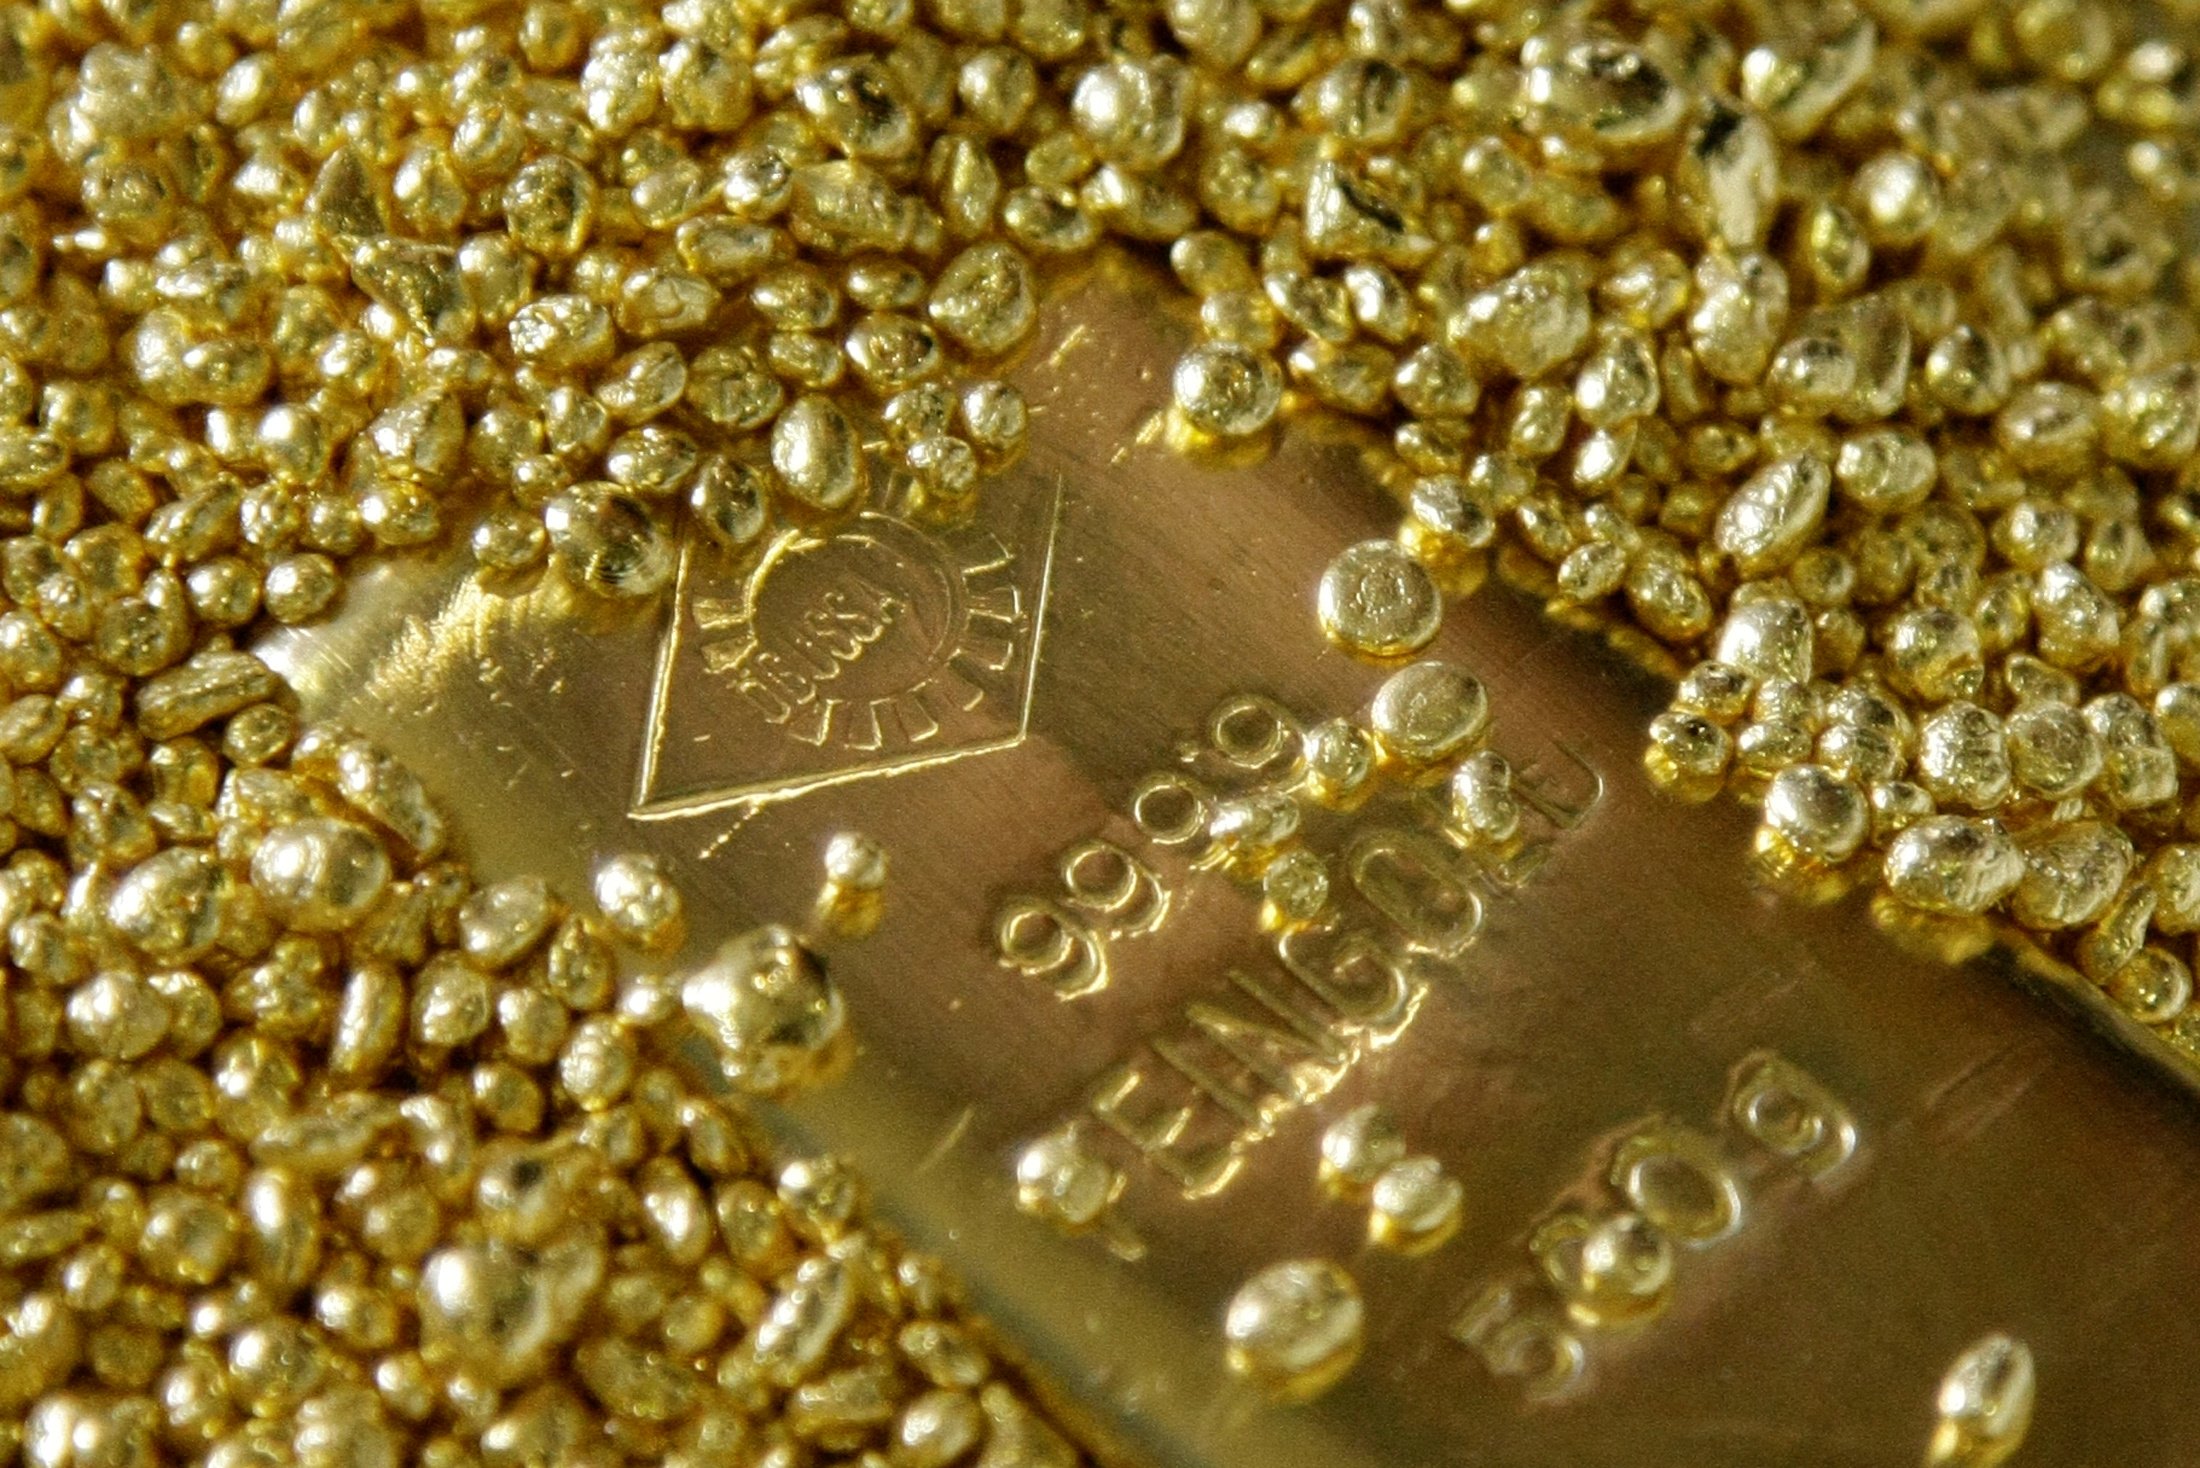 Geçen yıl ticaretin çalkantılı olması altın fiyatını yükseltti